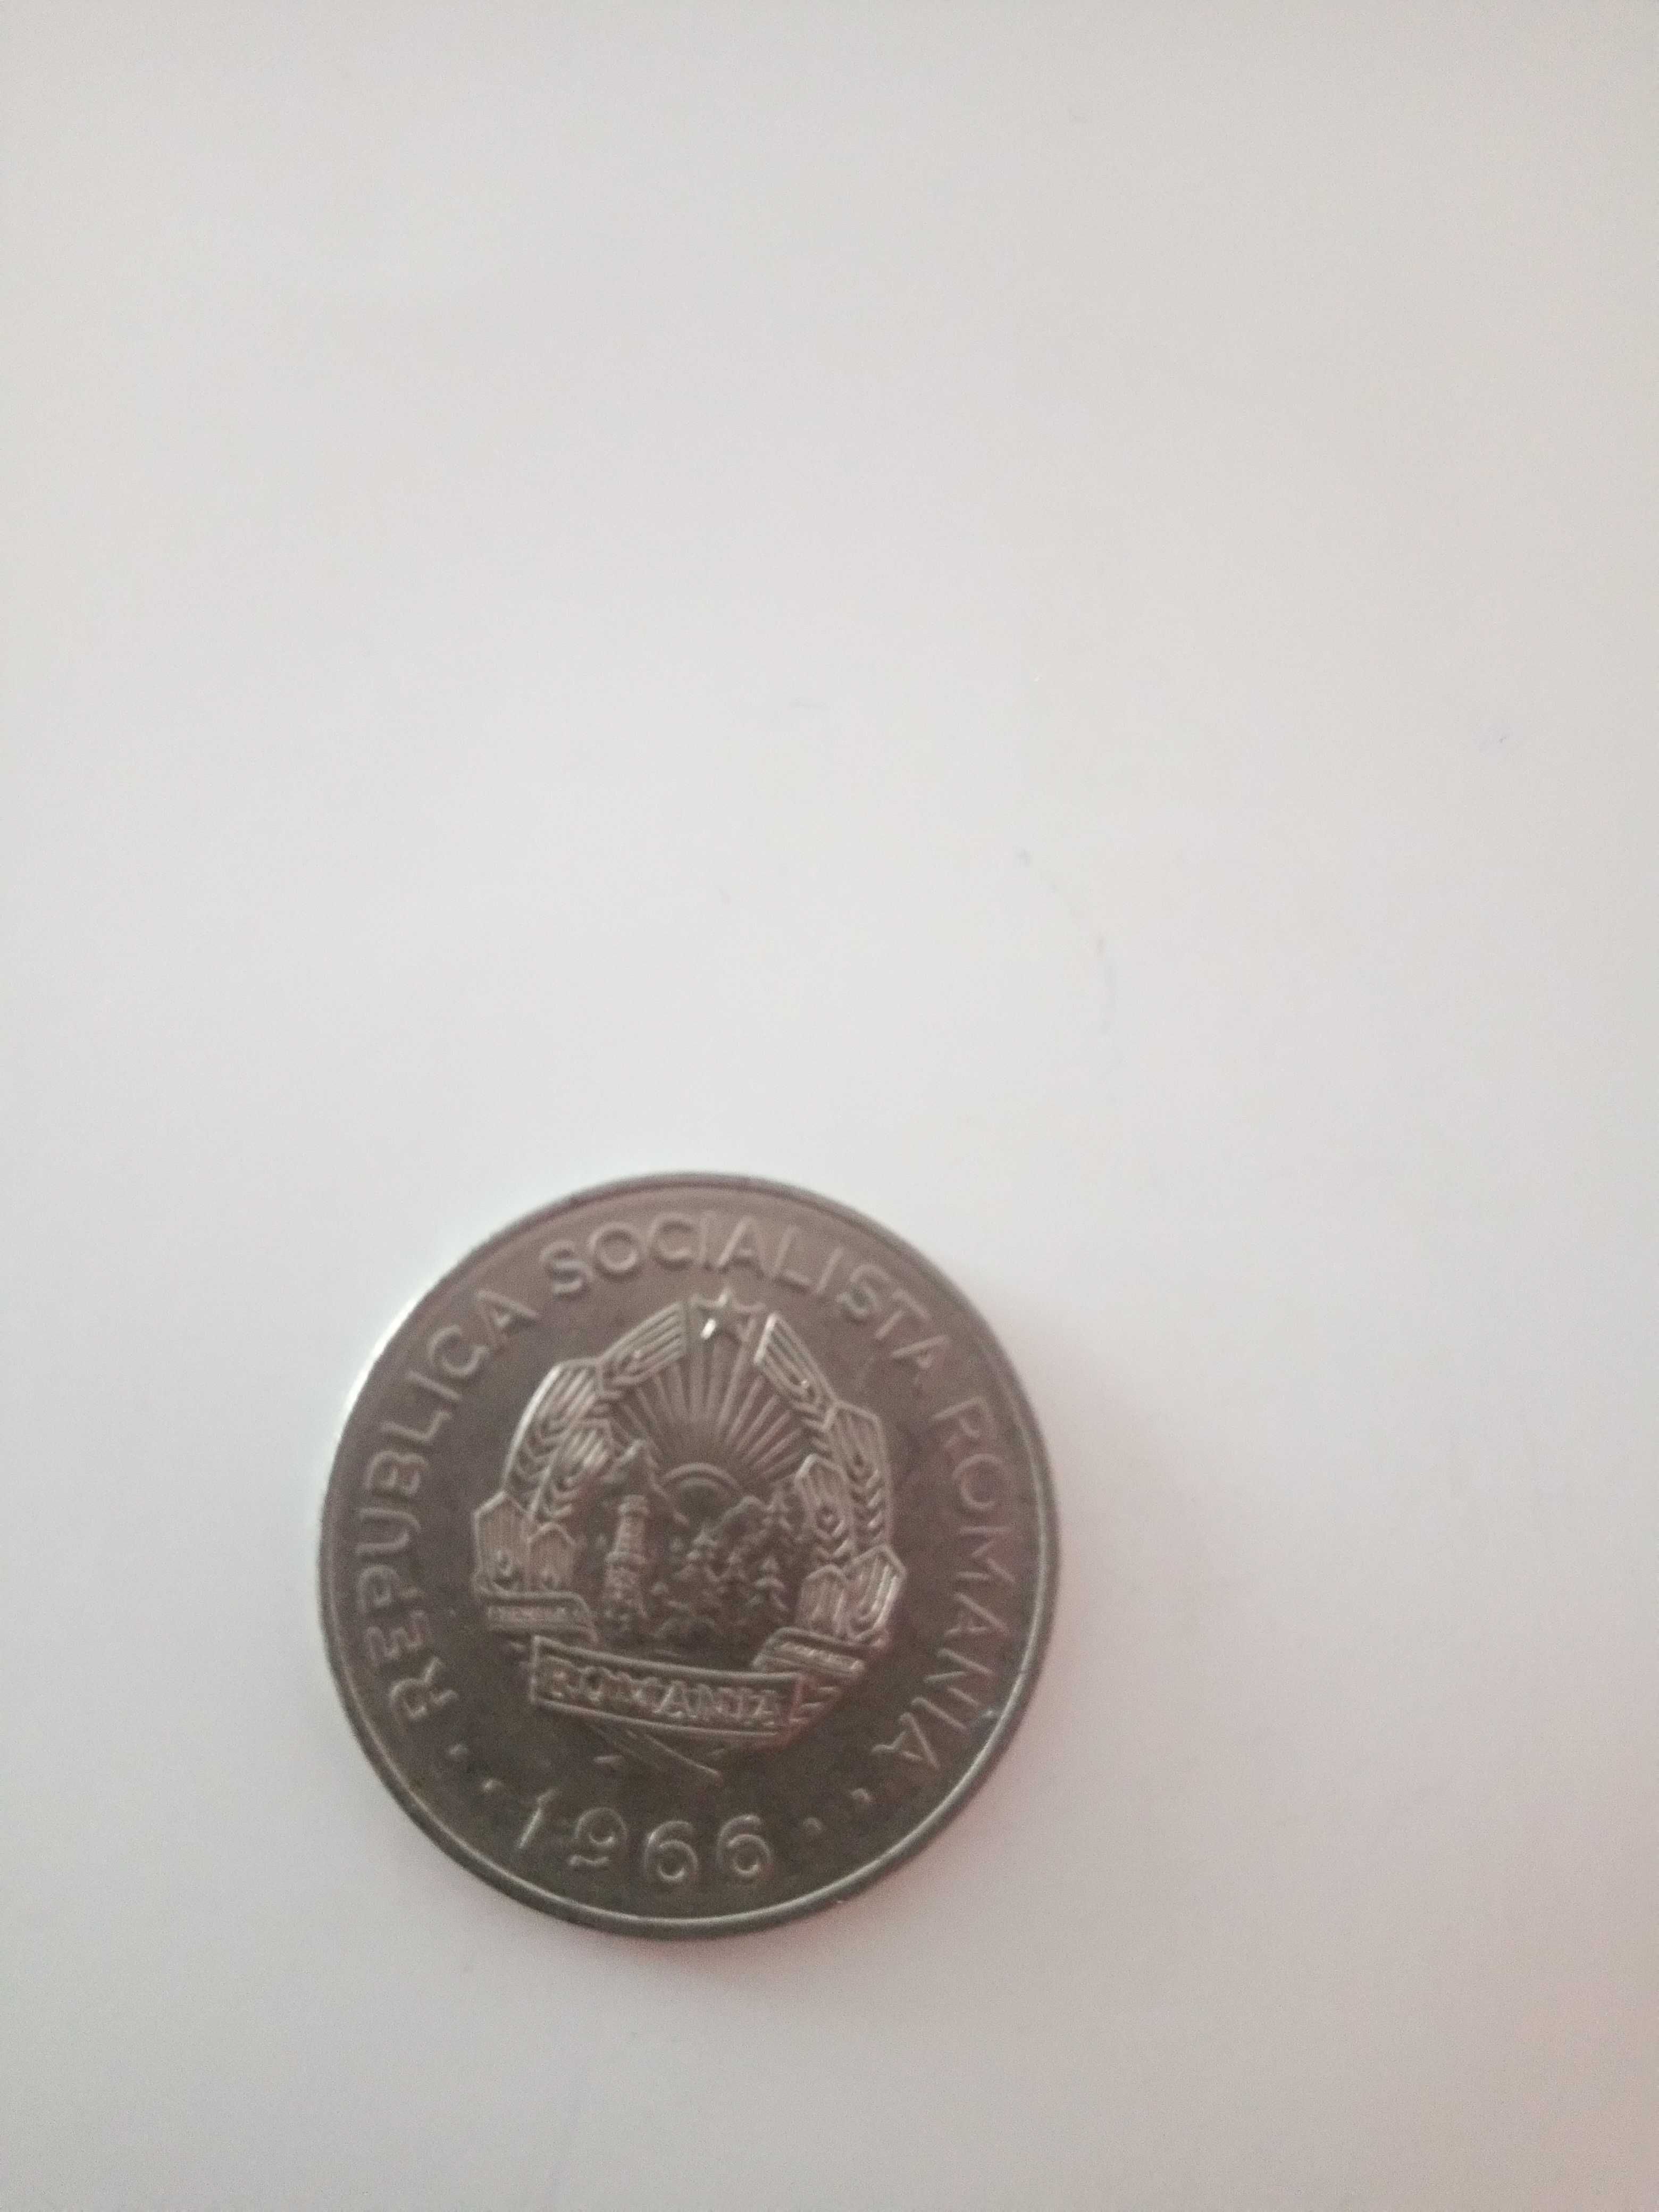 Vând monede vechi de 1 leu din 1966.